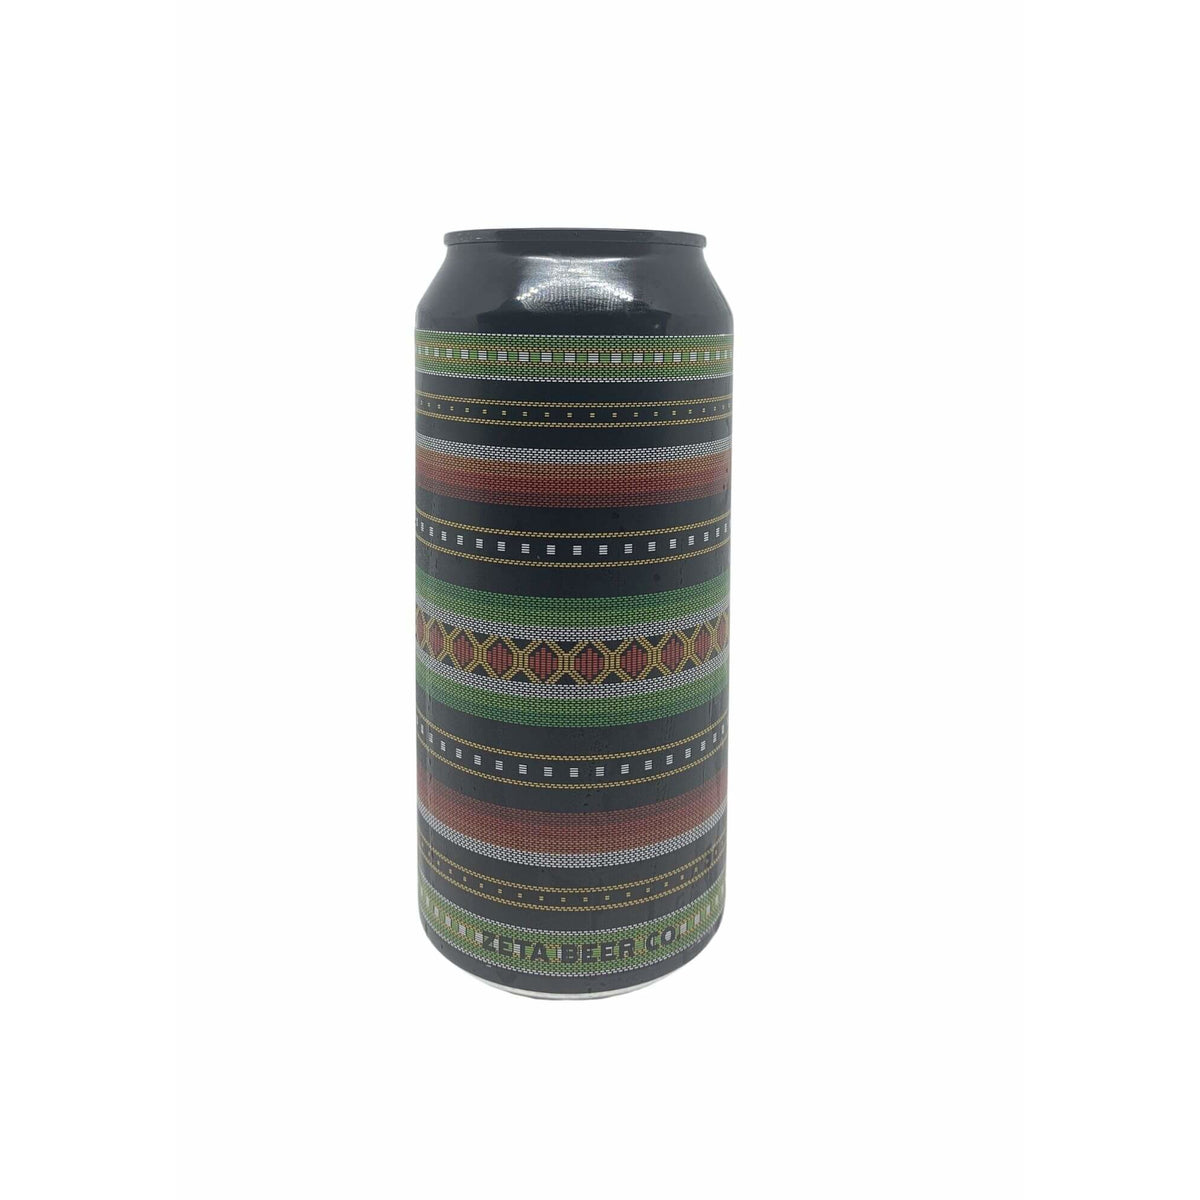 Salvatge | Zeta Beer - Cans & Corks